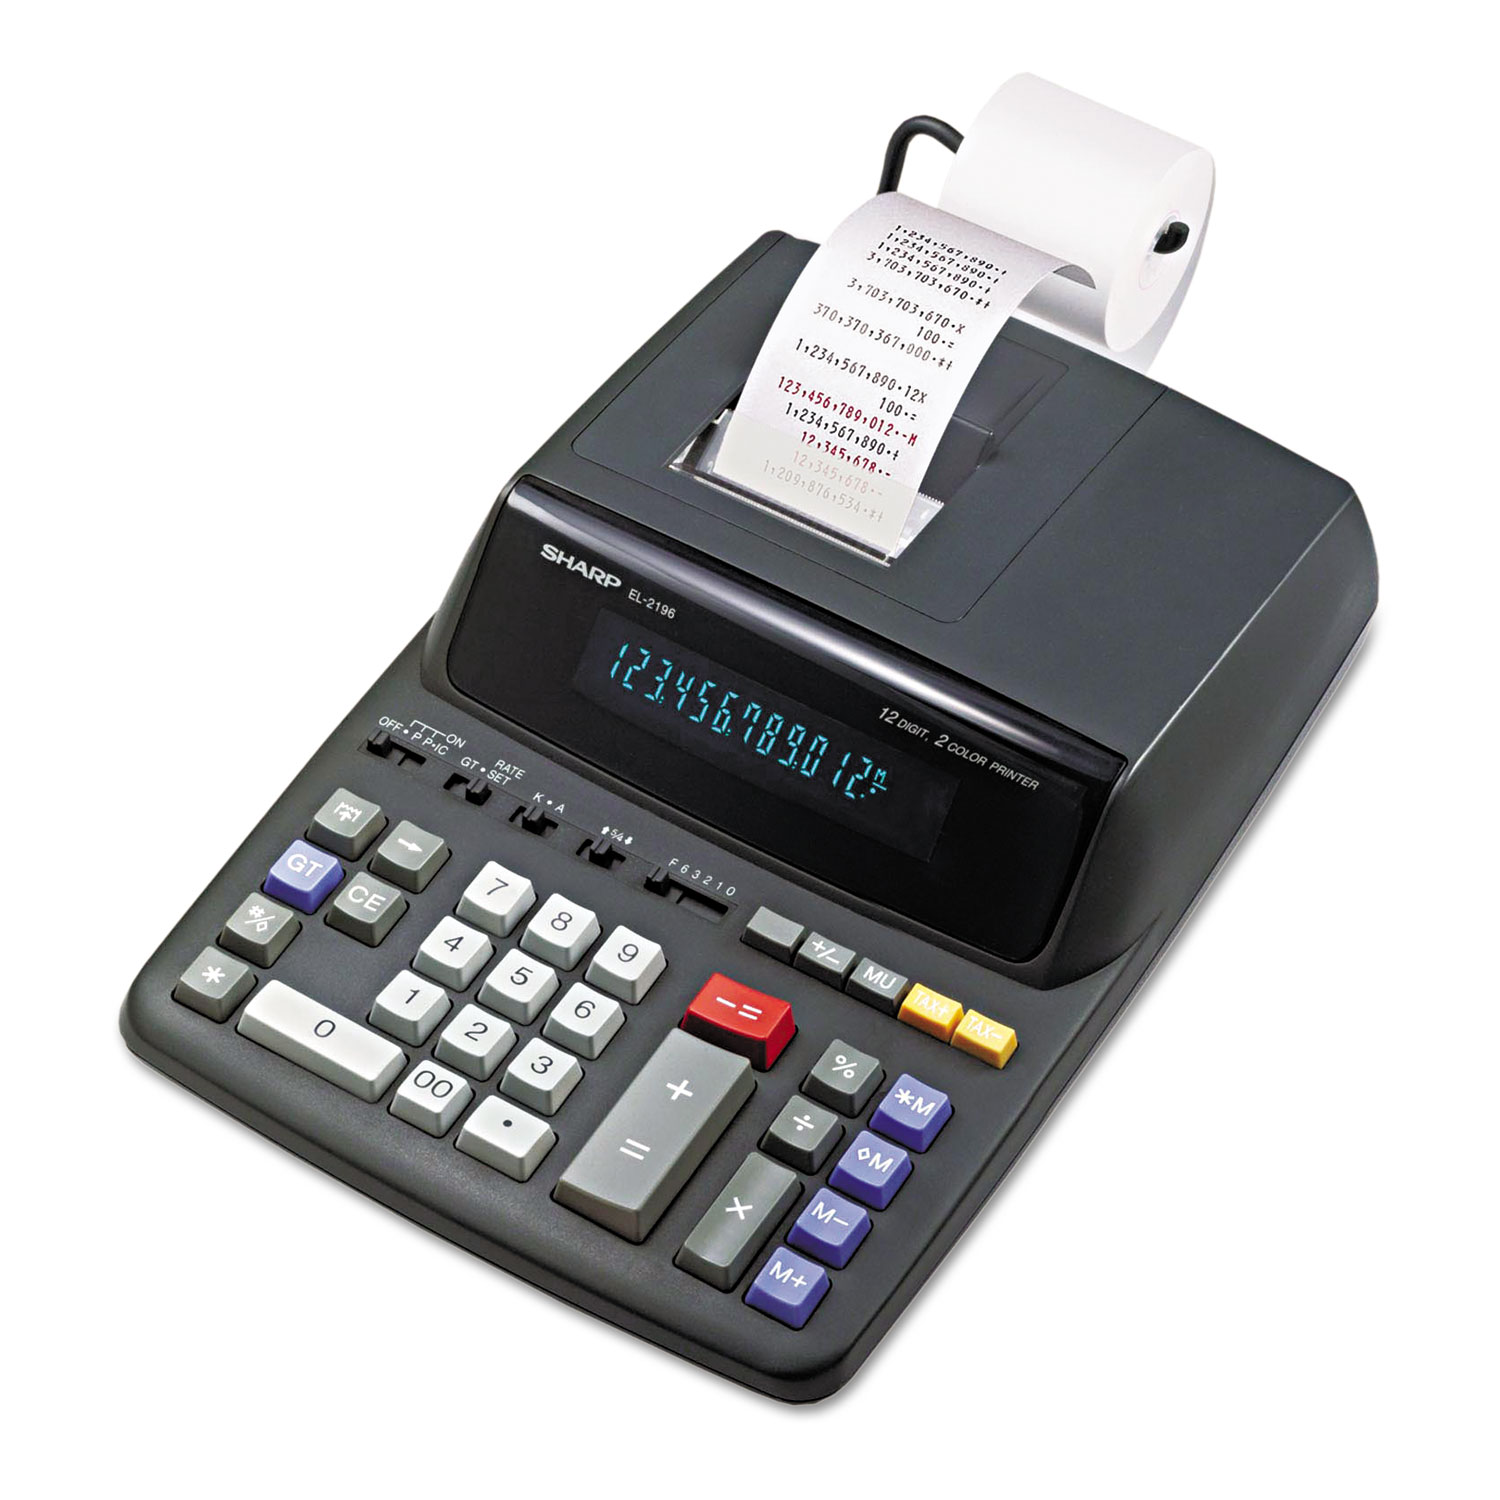  Sharp EL2196BL EL2196BL Two-Color Printing Calculator, Black/Red Print, 3.7 Lines/Sec (SHREL2196BL) 